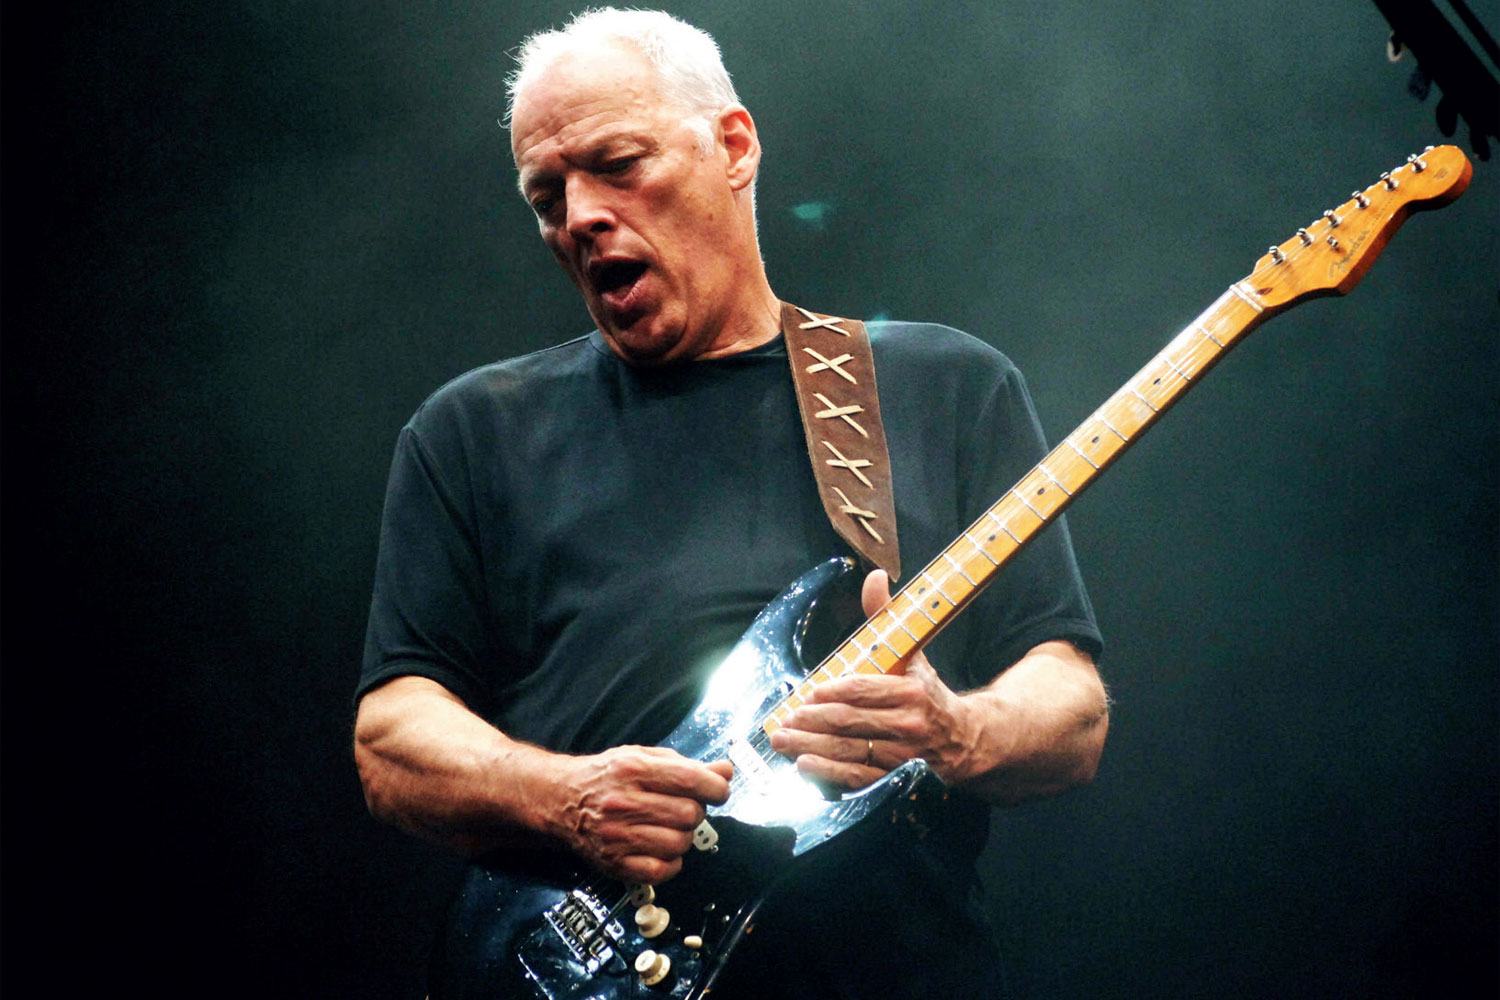 , David Gilmour lançou “Yes, I Have Ghosts”, a sua nova música em cinco anos